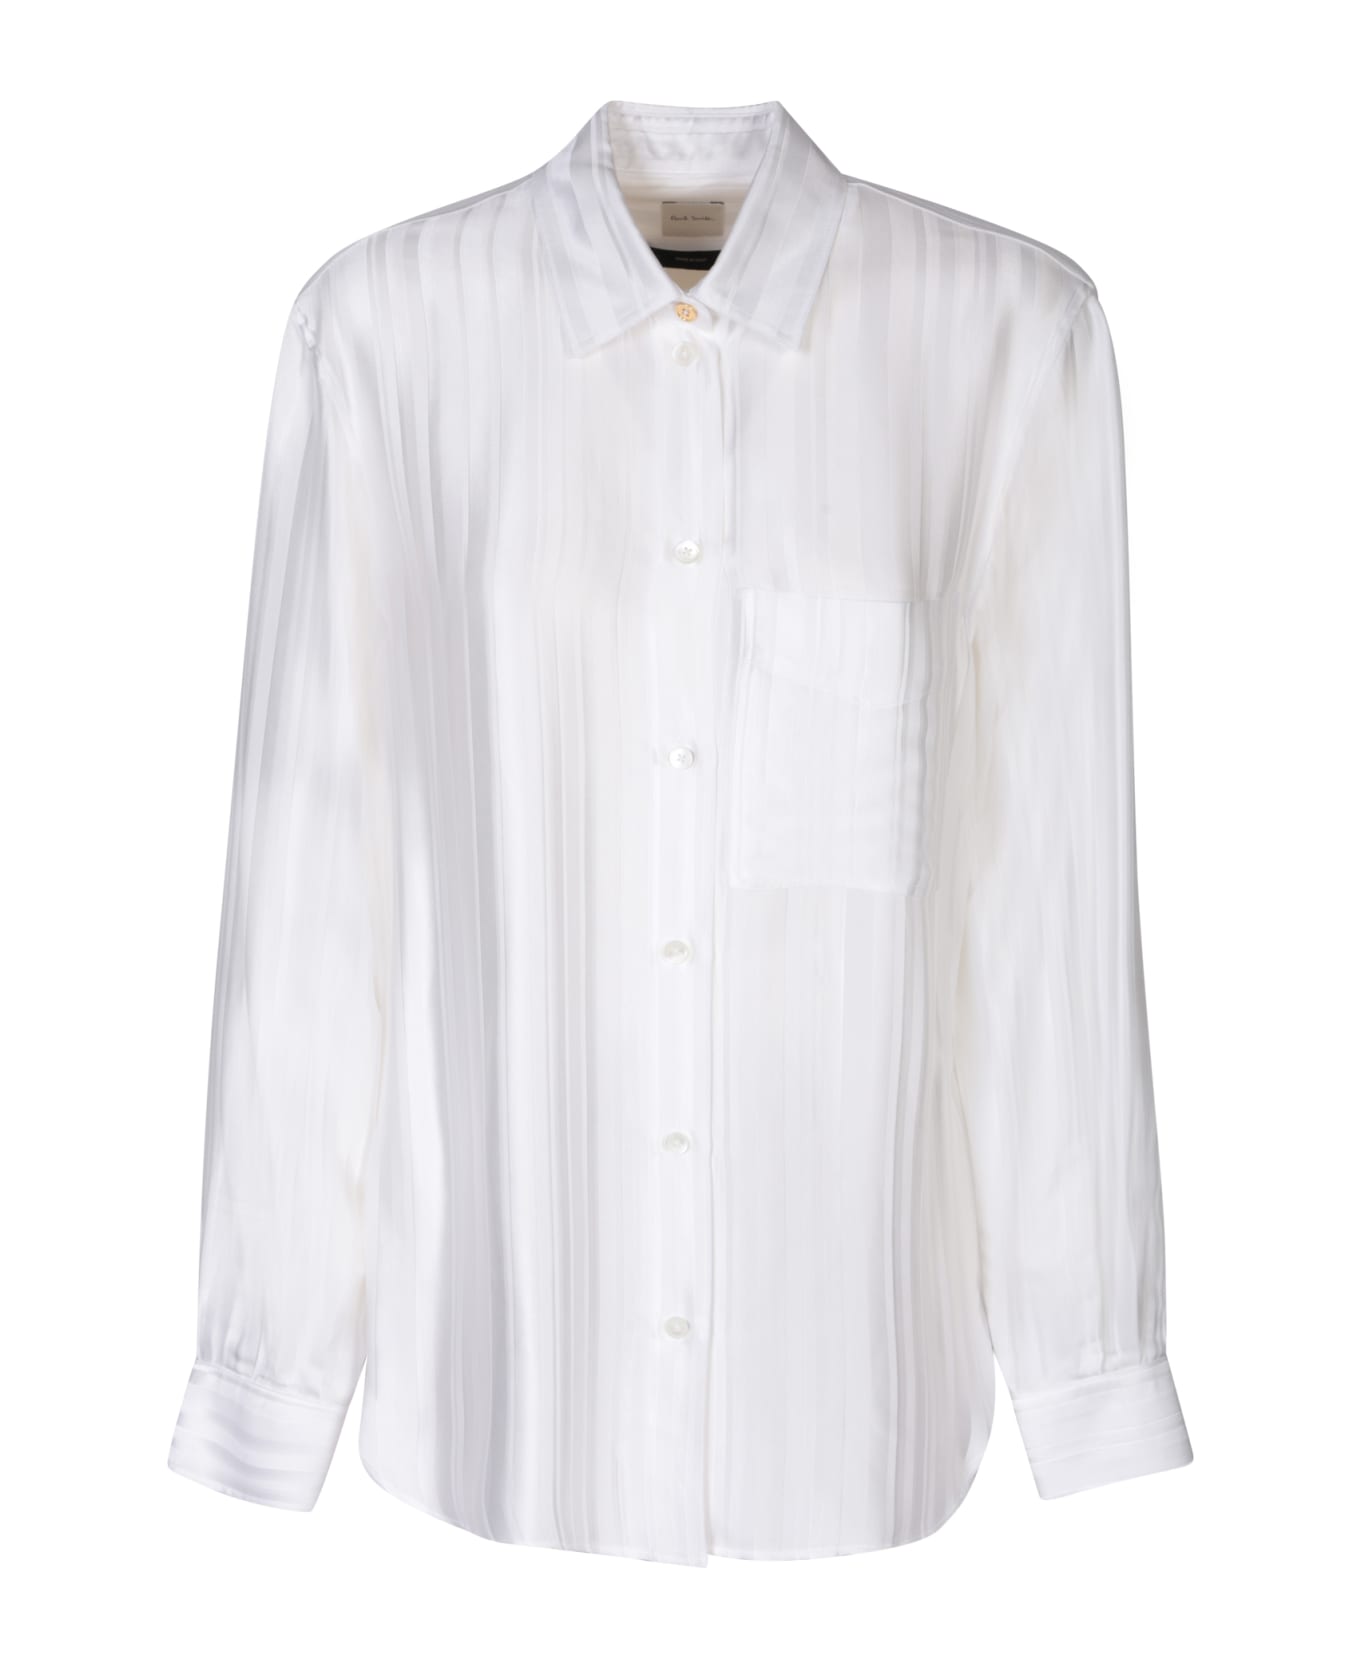 Paul Smith Striped Motif White Shirt - White シャツ